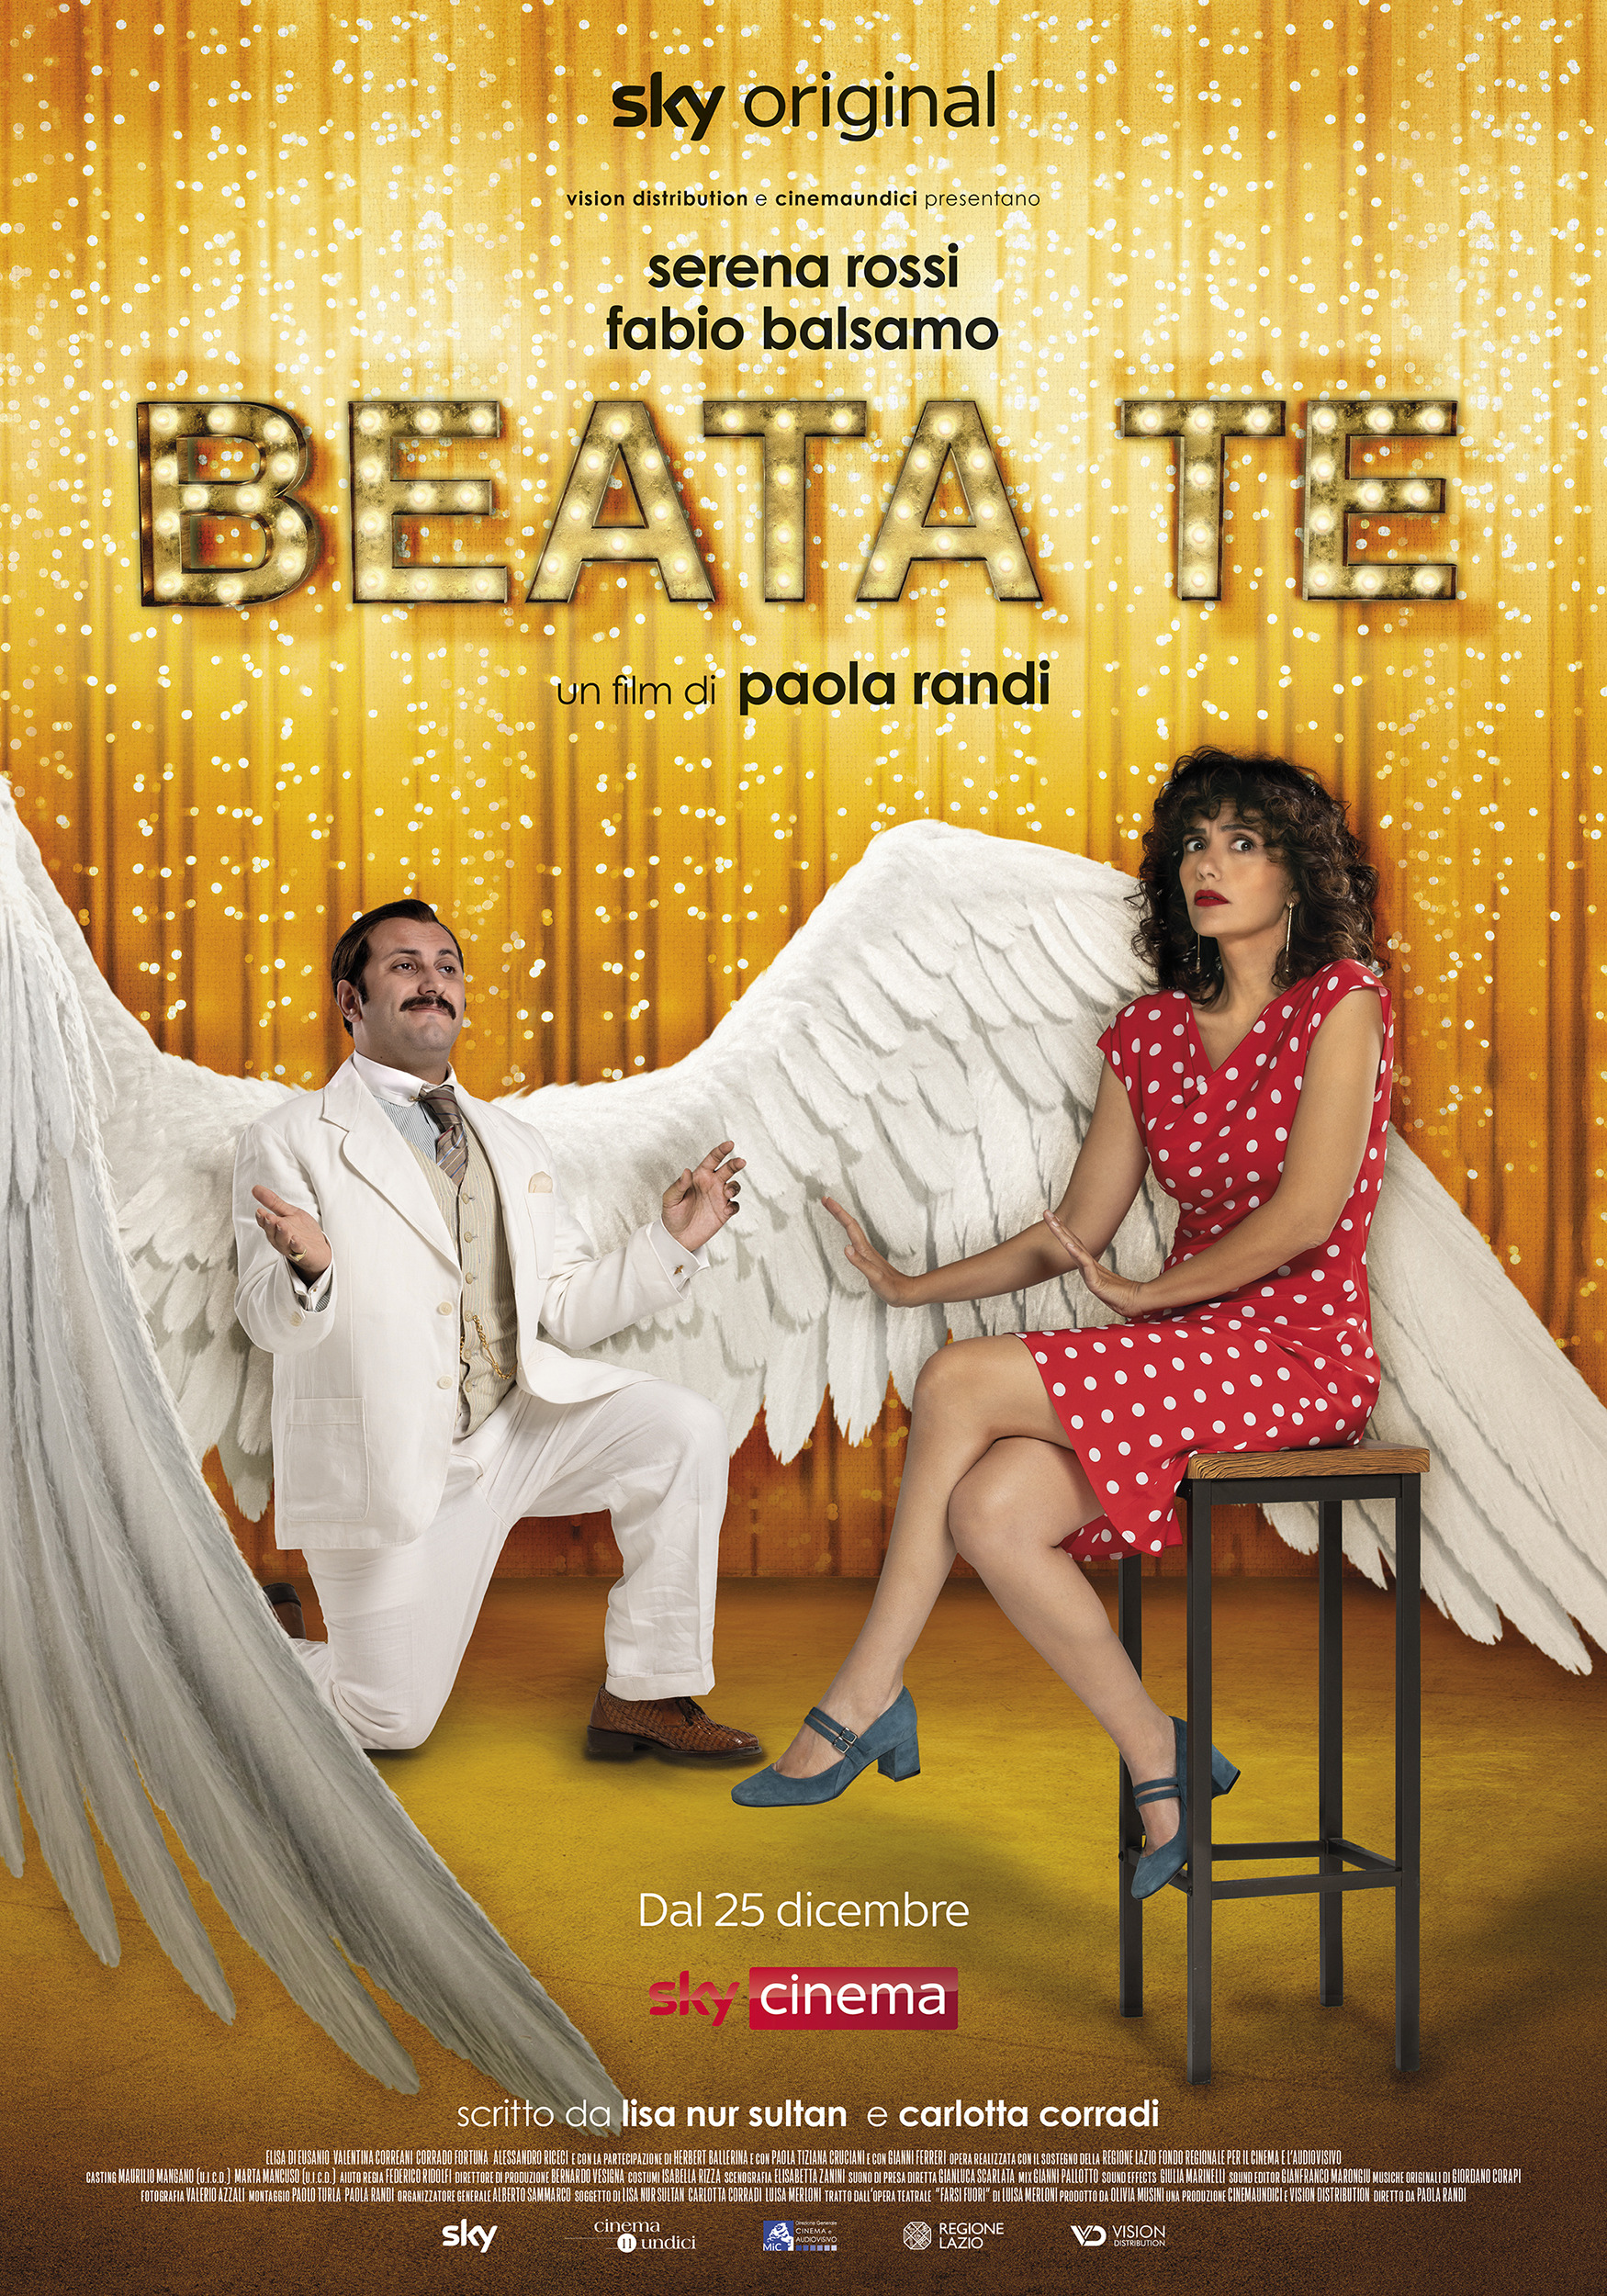 Mega Sized Movie Poster Image for Beata te 